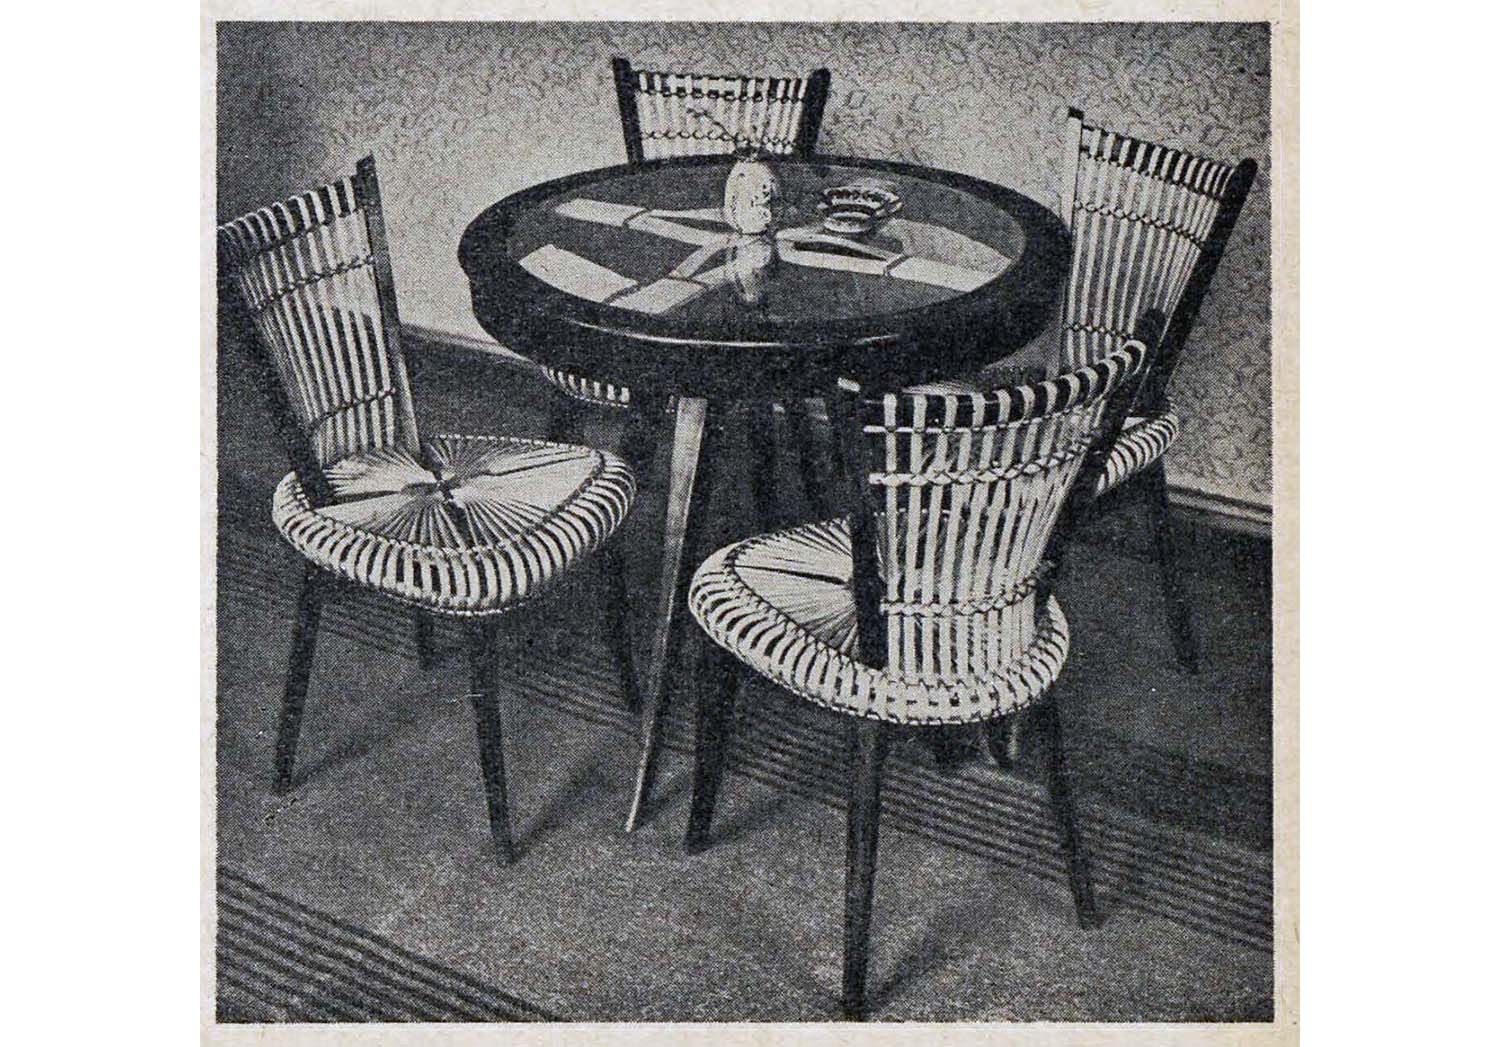 Instytut Langfuhr – Kawiarnia Morska - stolik i krzesła projektu Władysława Wołkowskiego, Magazyn Architektura 1955, nr 8